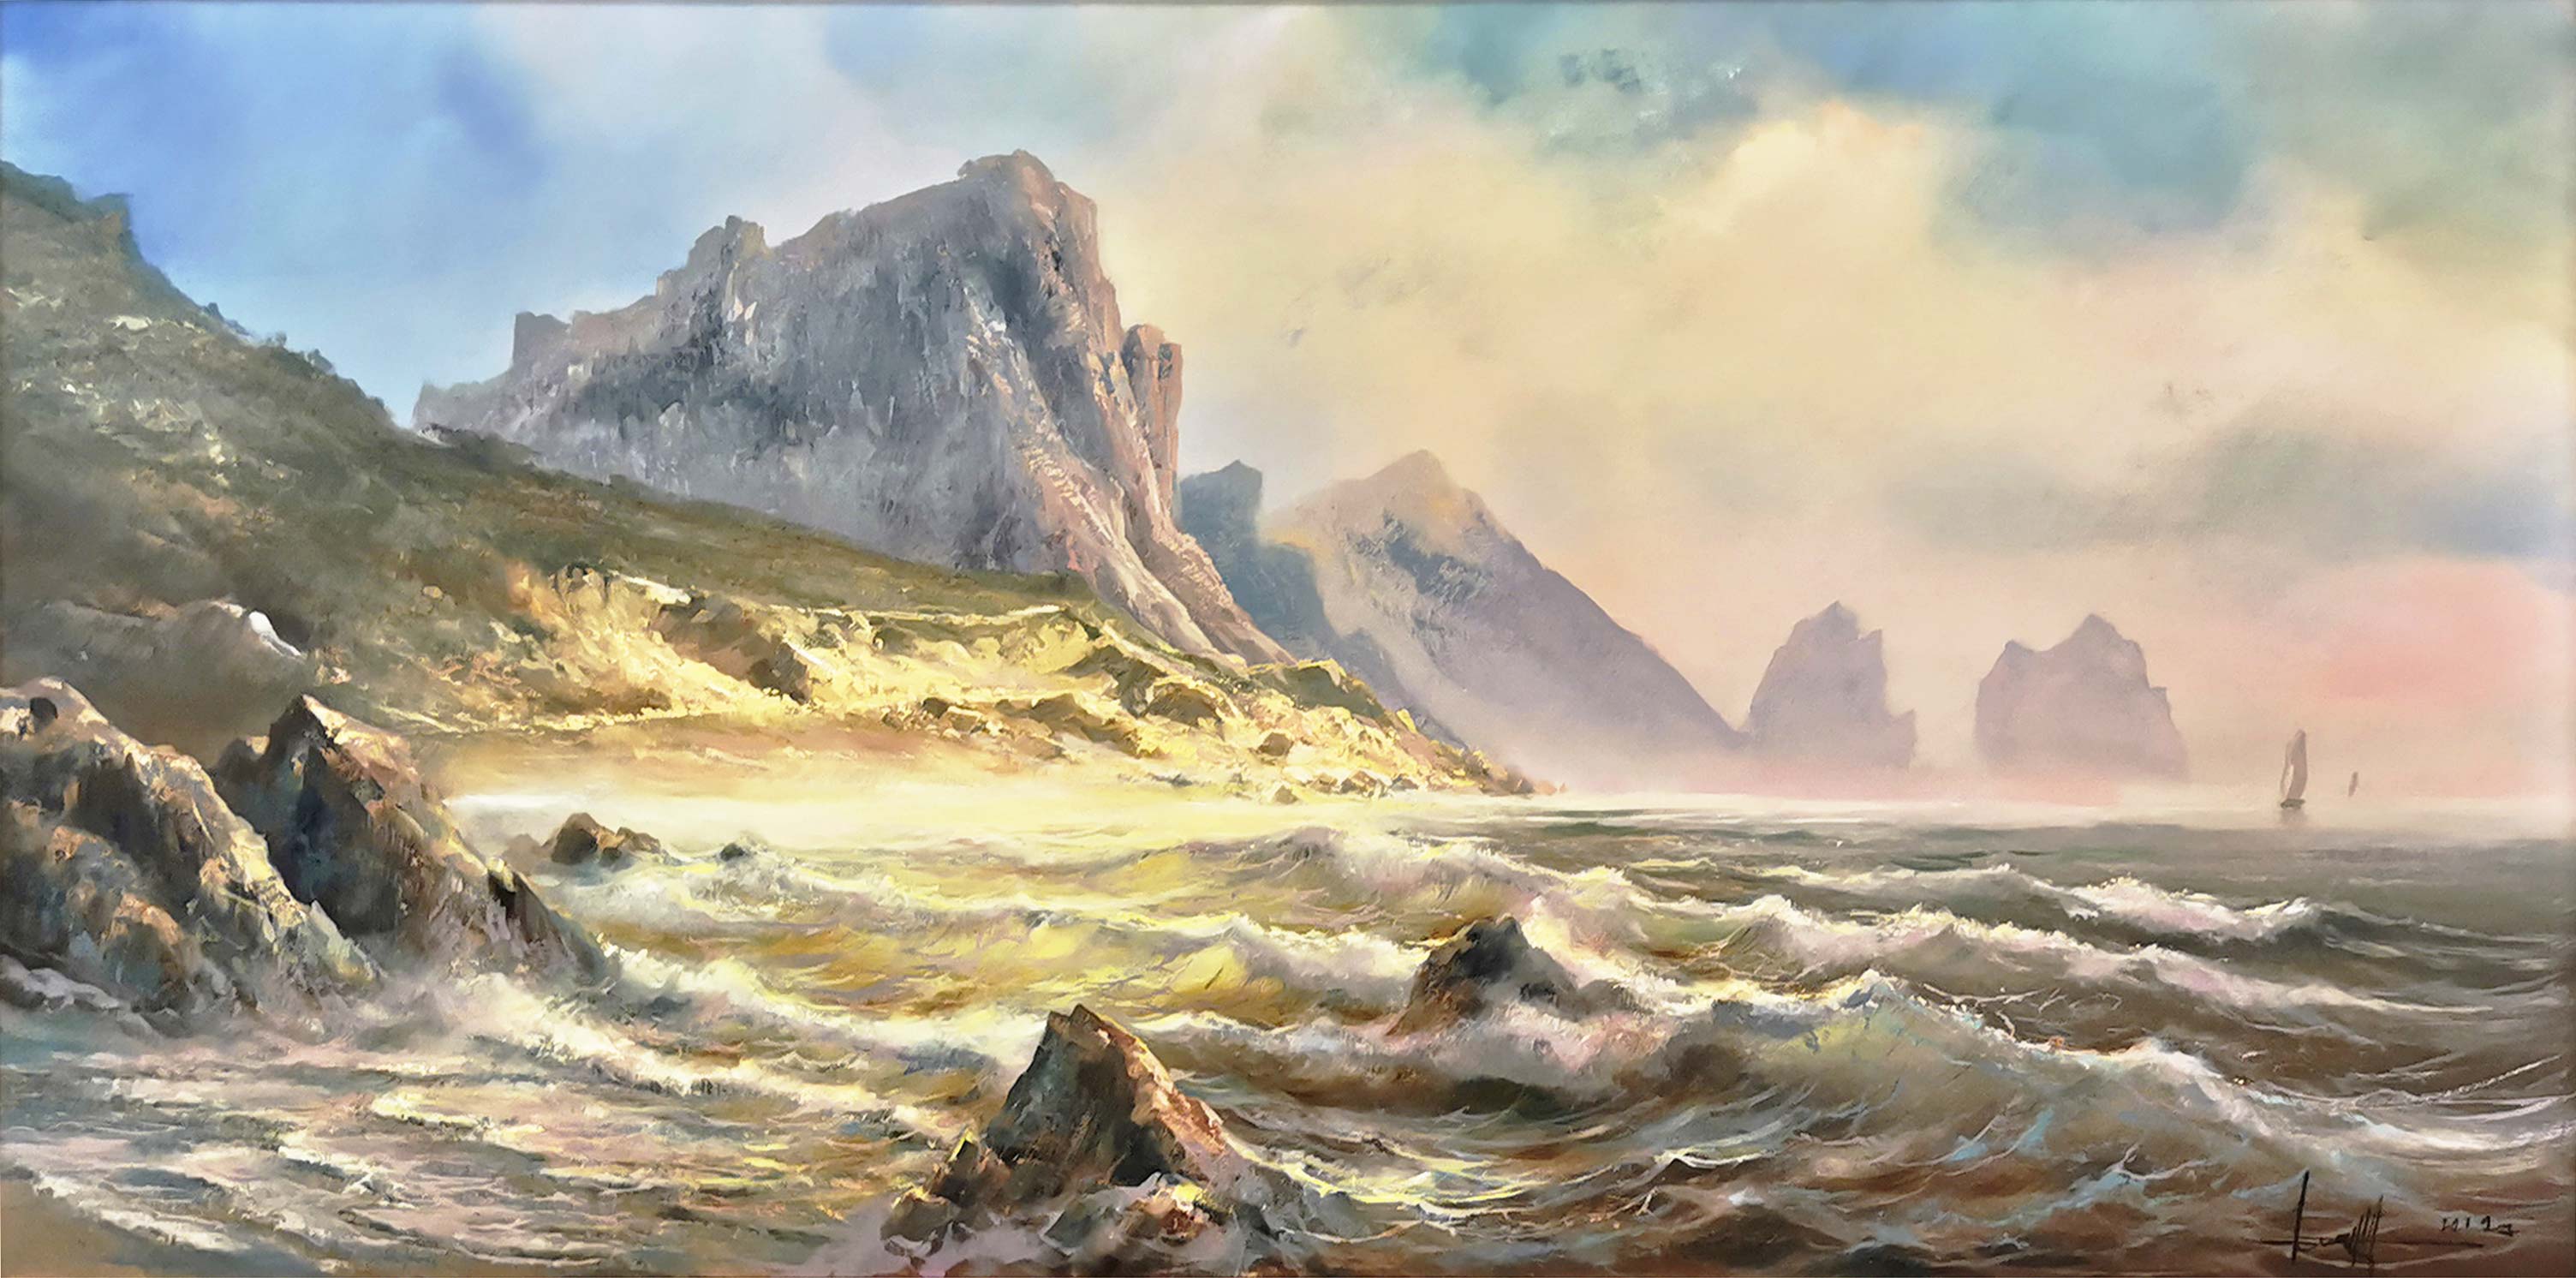 Seascape - 1, Dmitry Balakhonov, Buy the painting Oil